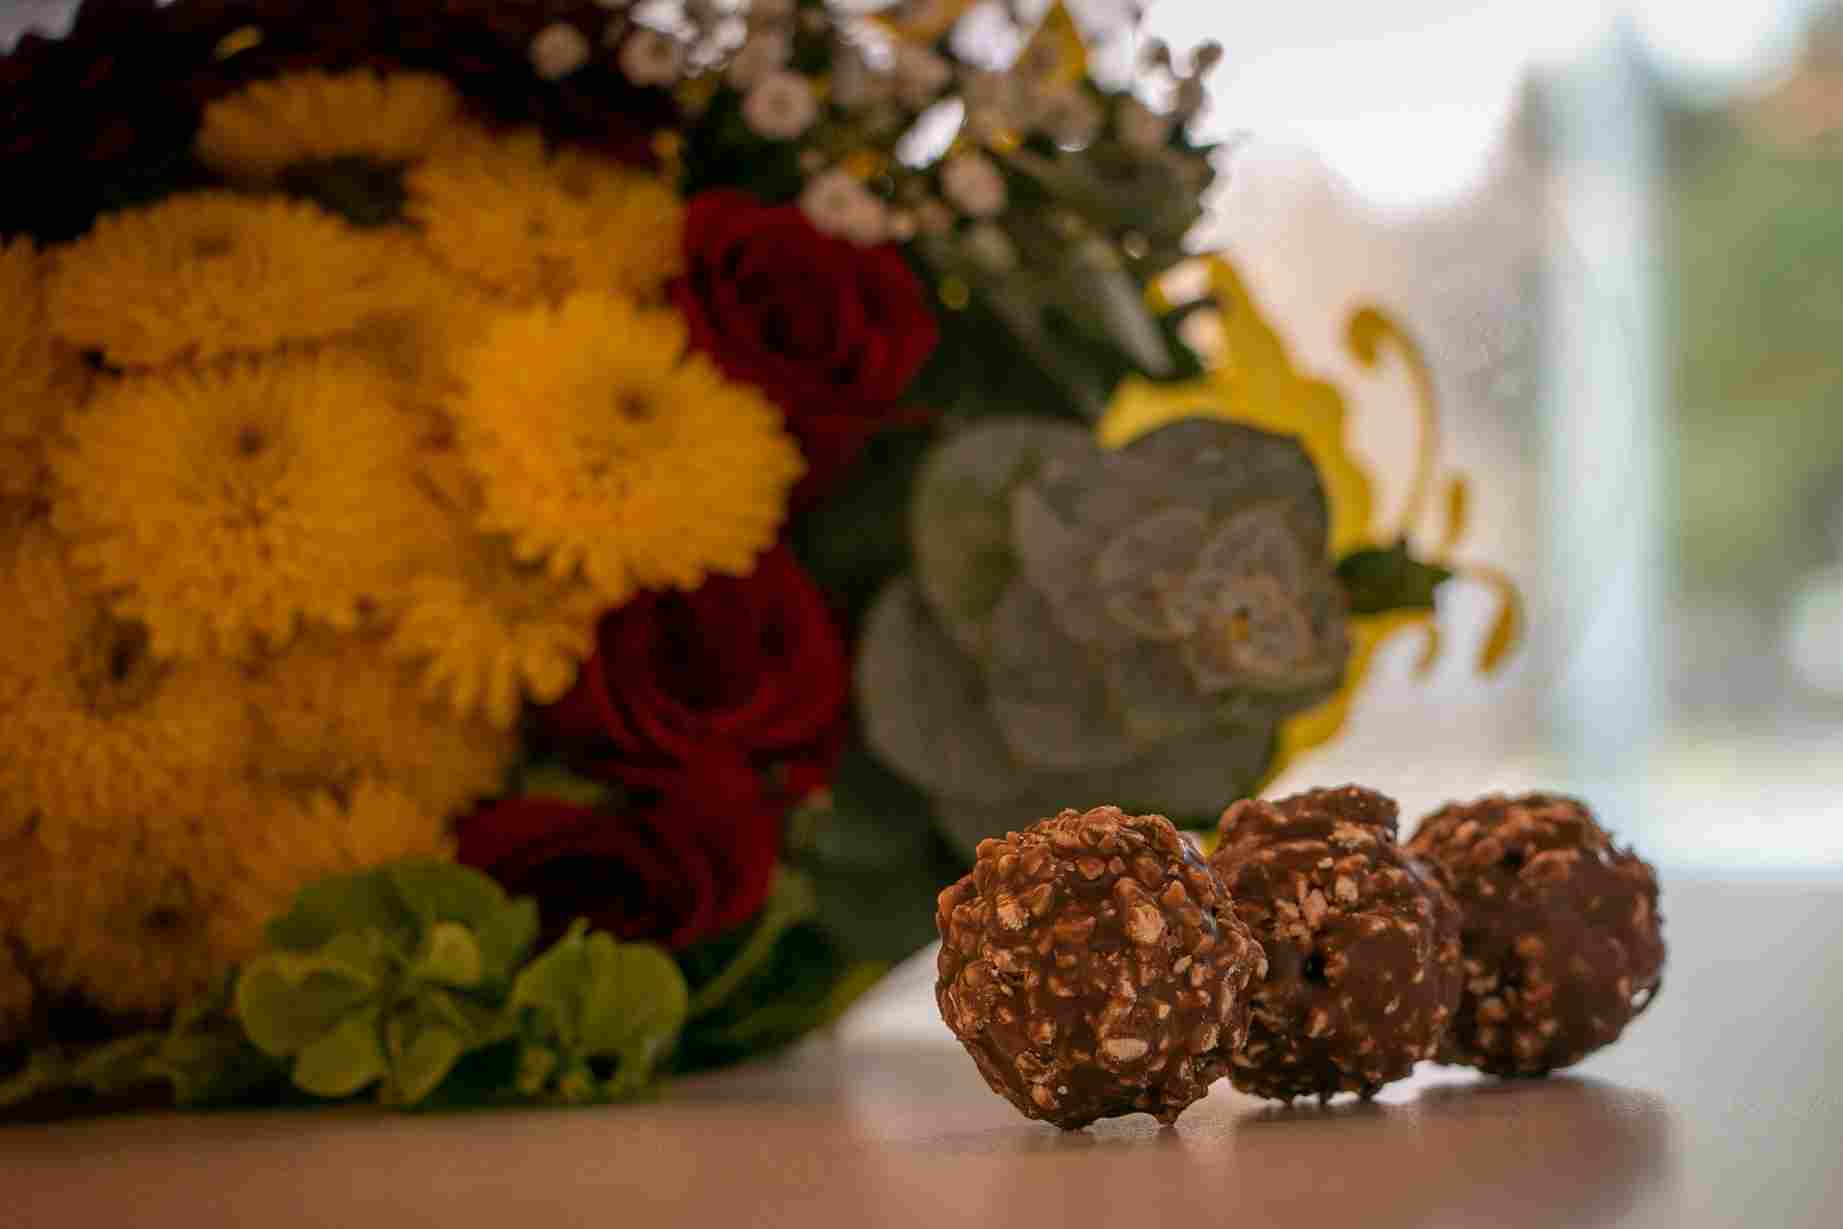 Flores y chocolates son los regalos más populares